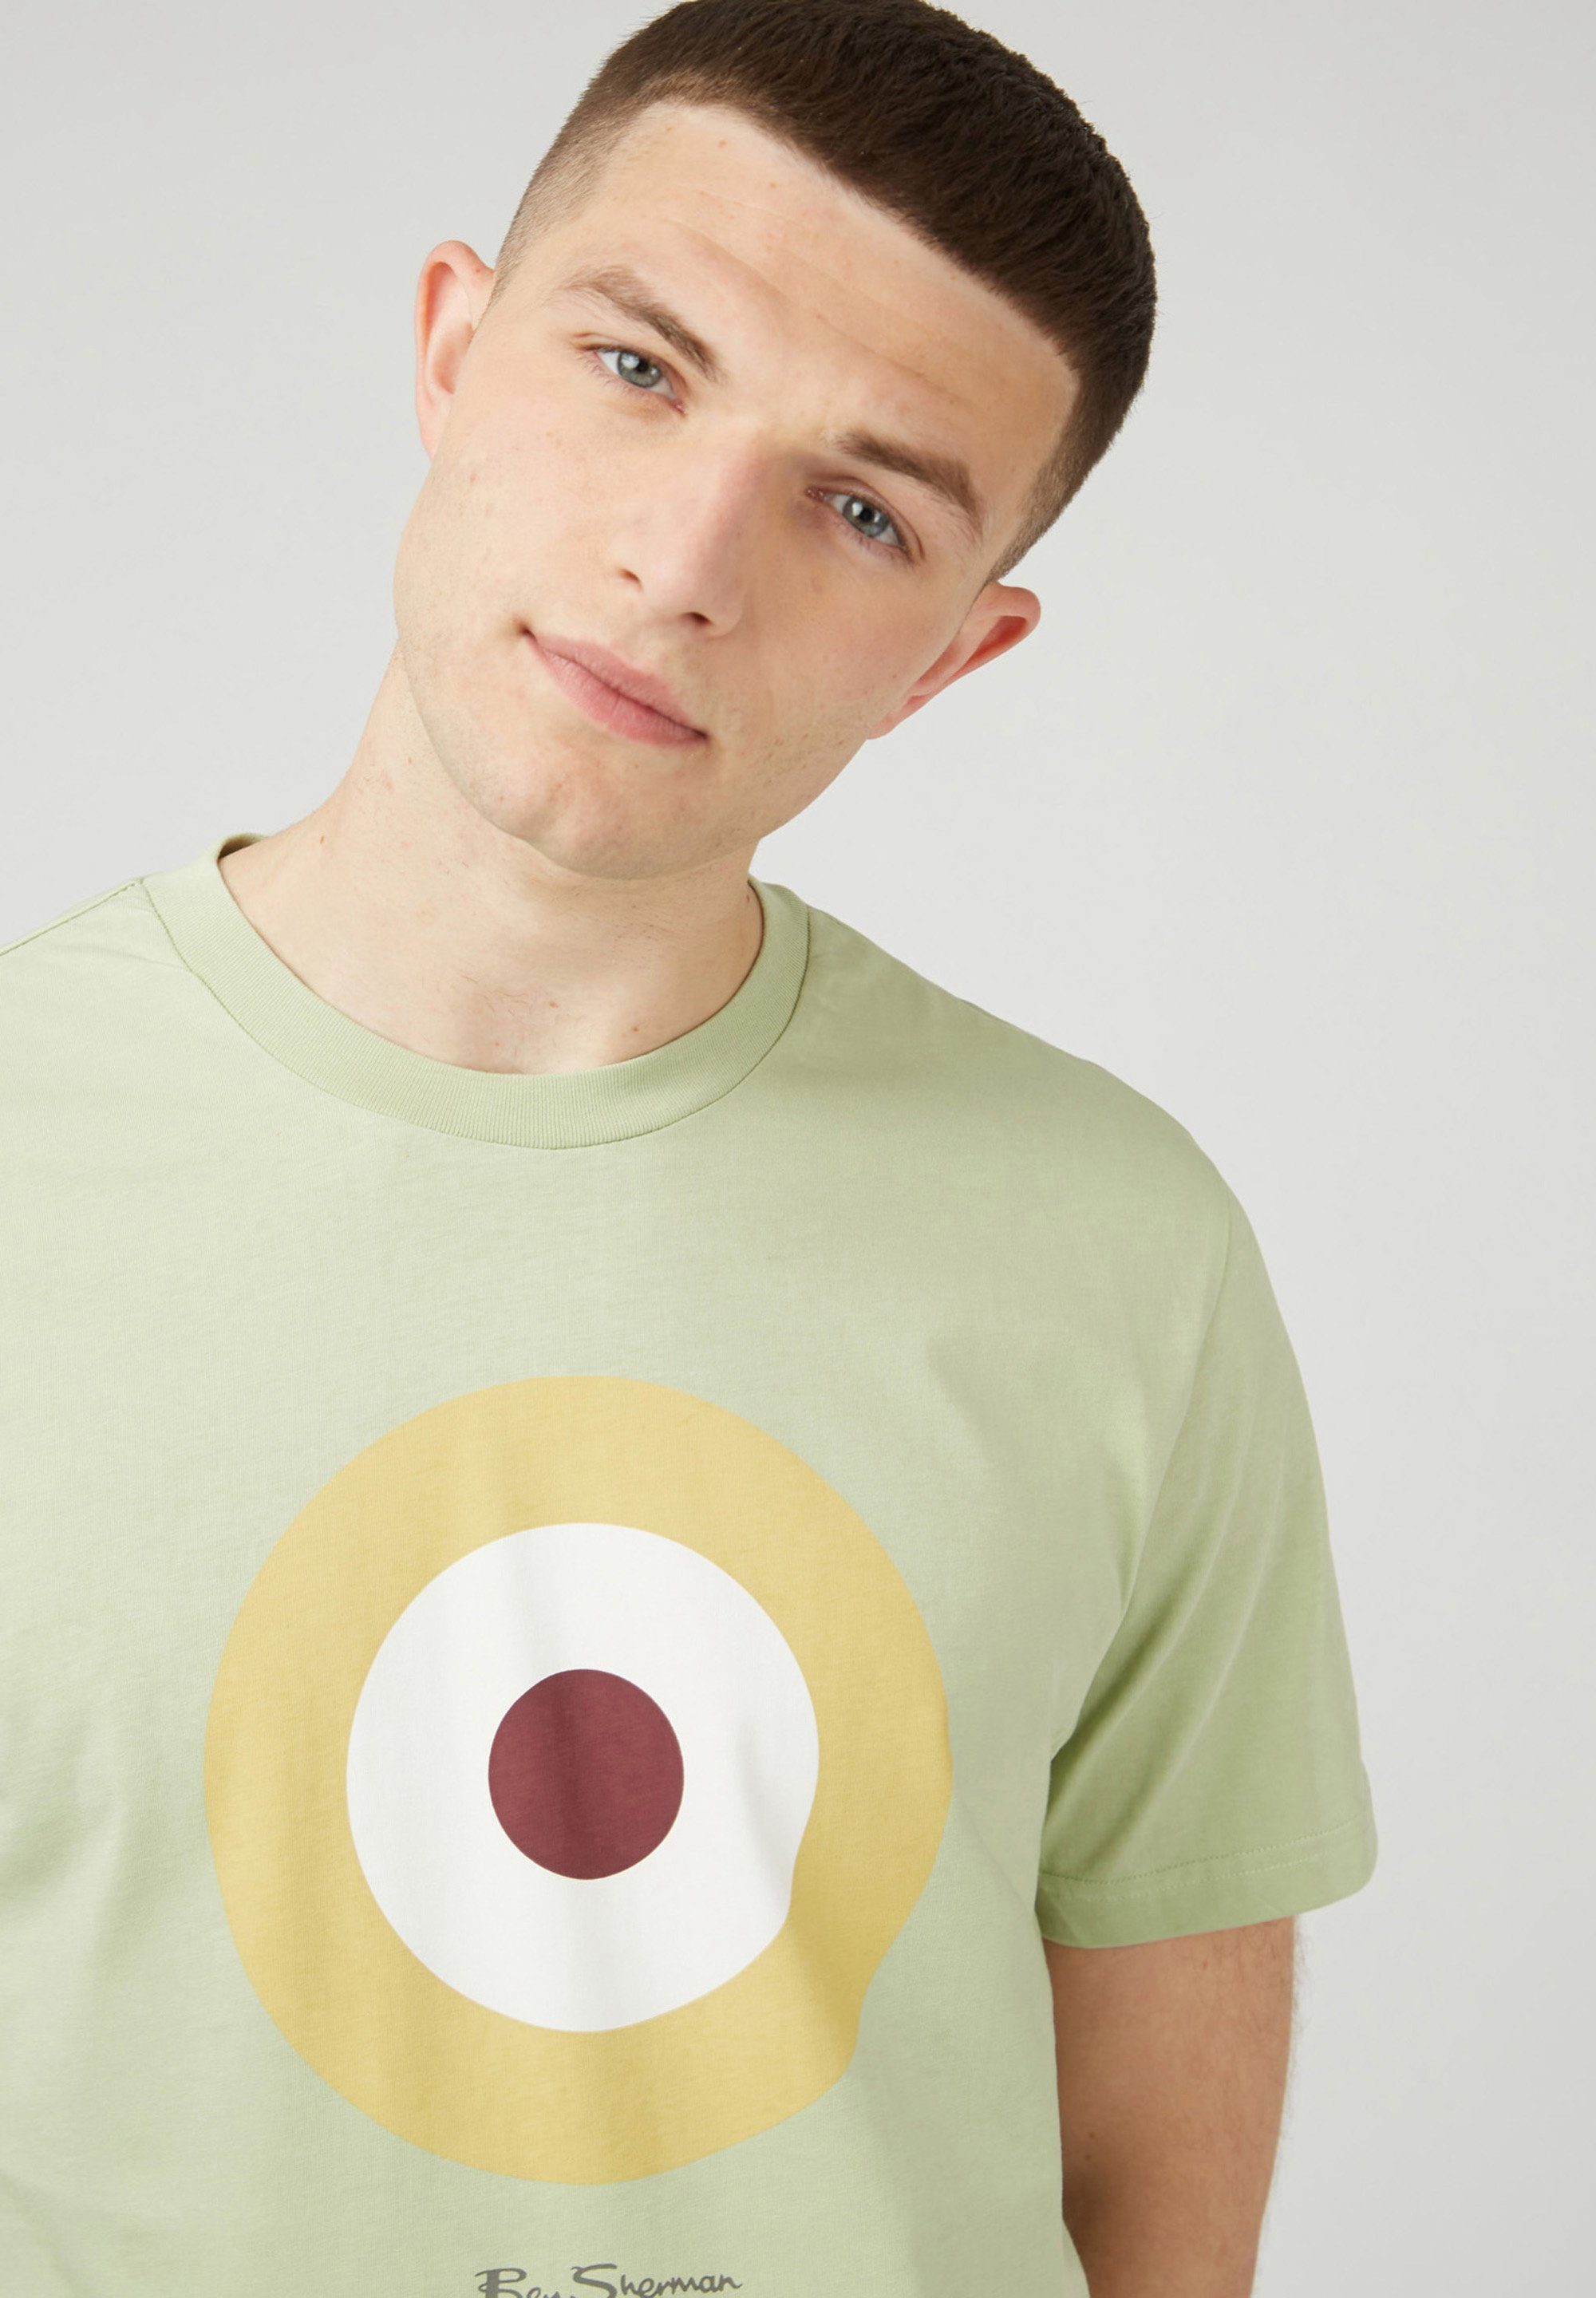 Ben Sherman T-Shirt Signature Target bedrucktes Tee Grafisch T-Shirt pistachio